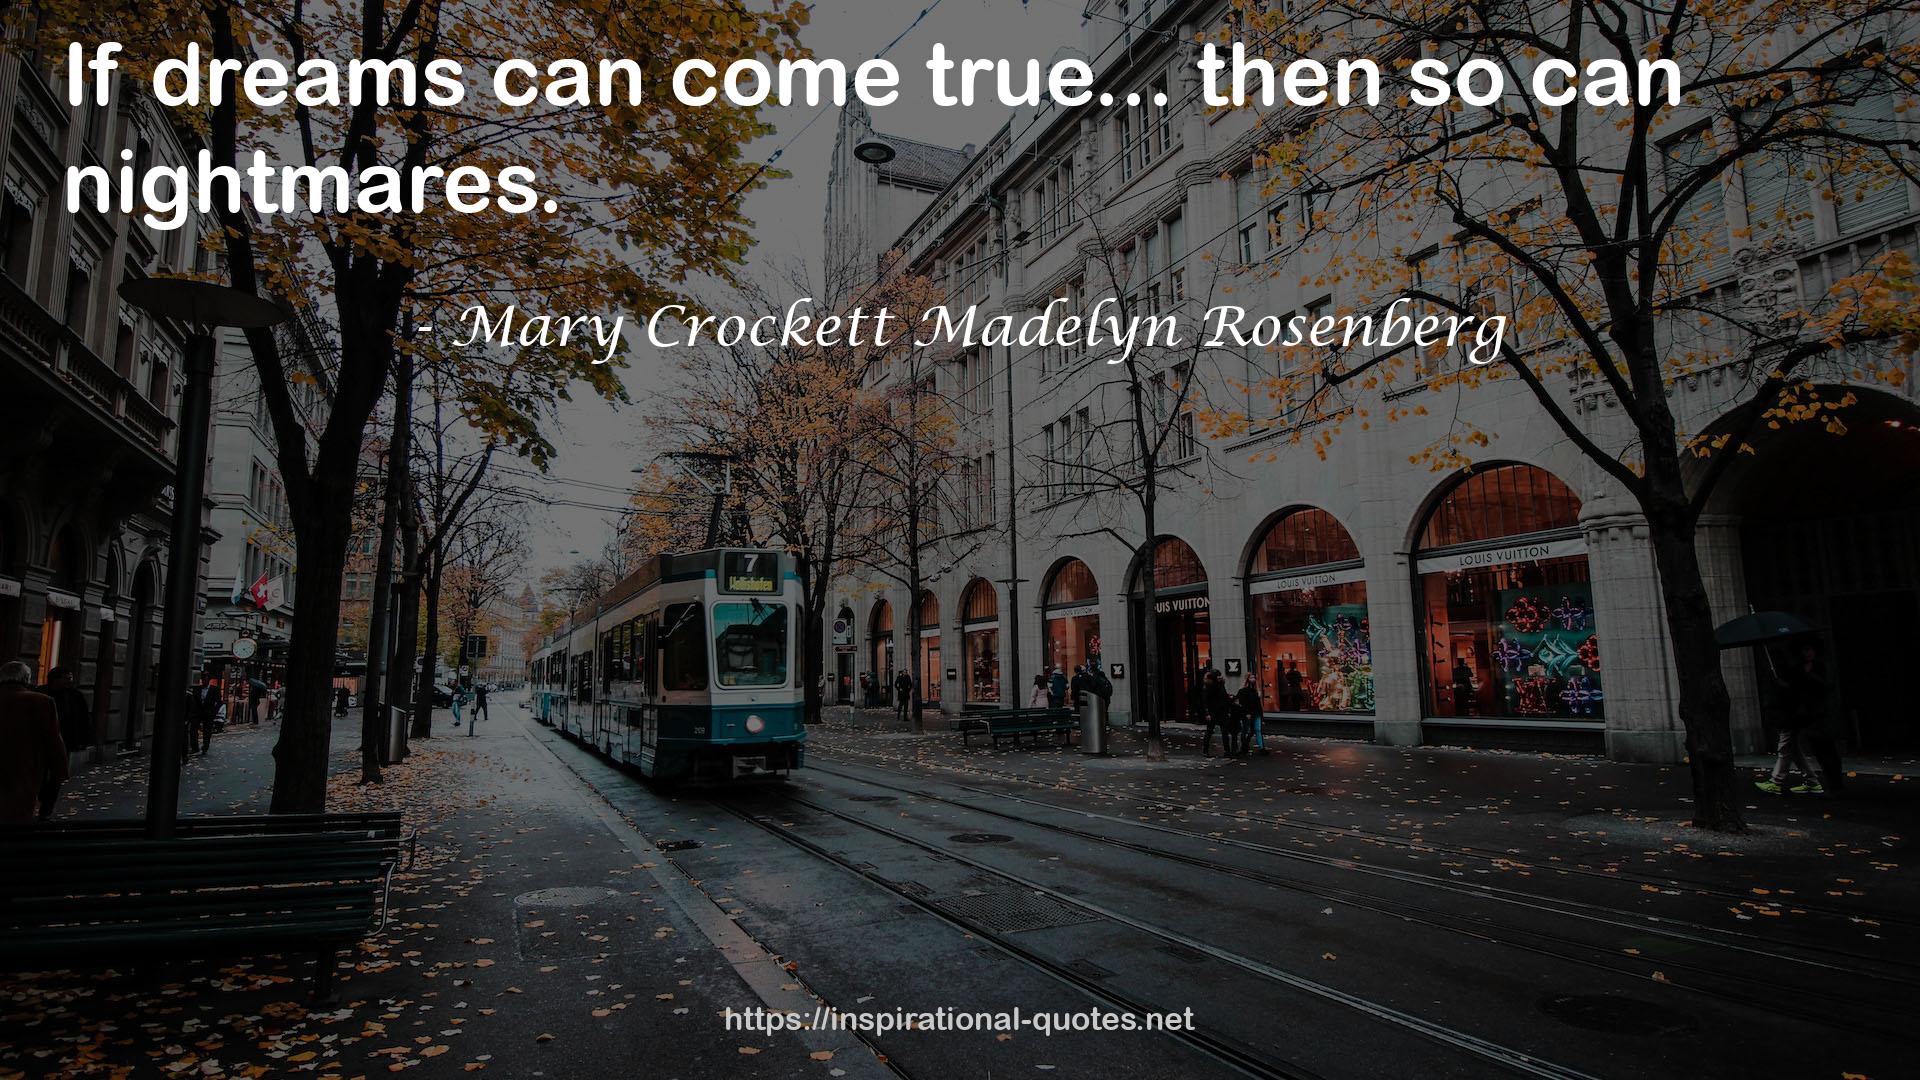 Mary Crockett Madelyn Rosenberg QUOTES